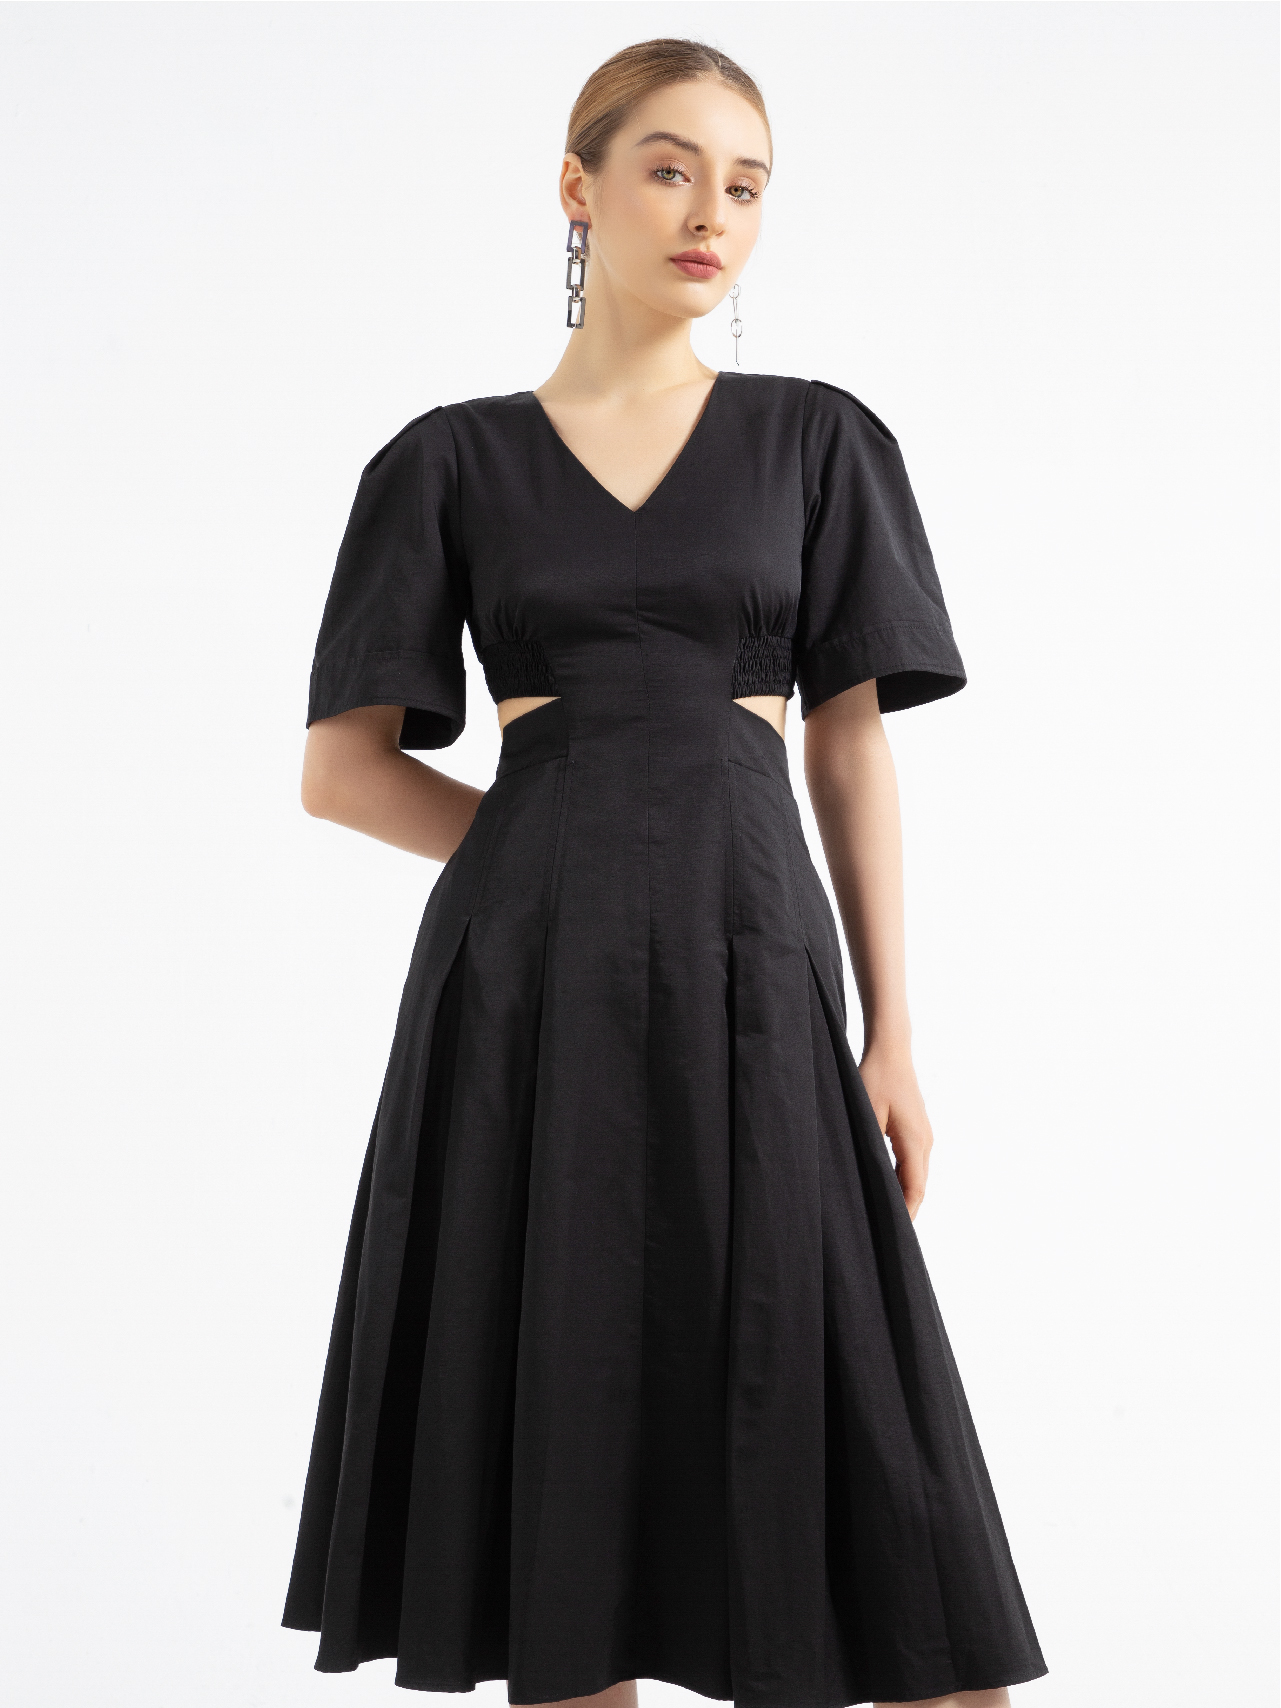 Đầm ren xòe cổ cut-out KK102-35 | Thời trang công sở K&K Fashion